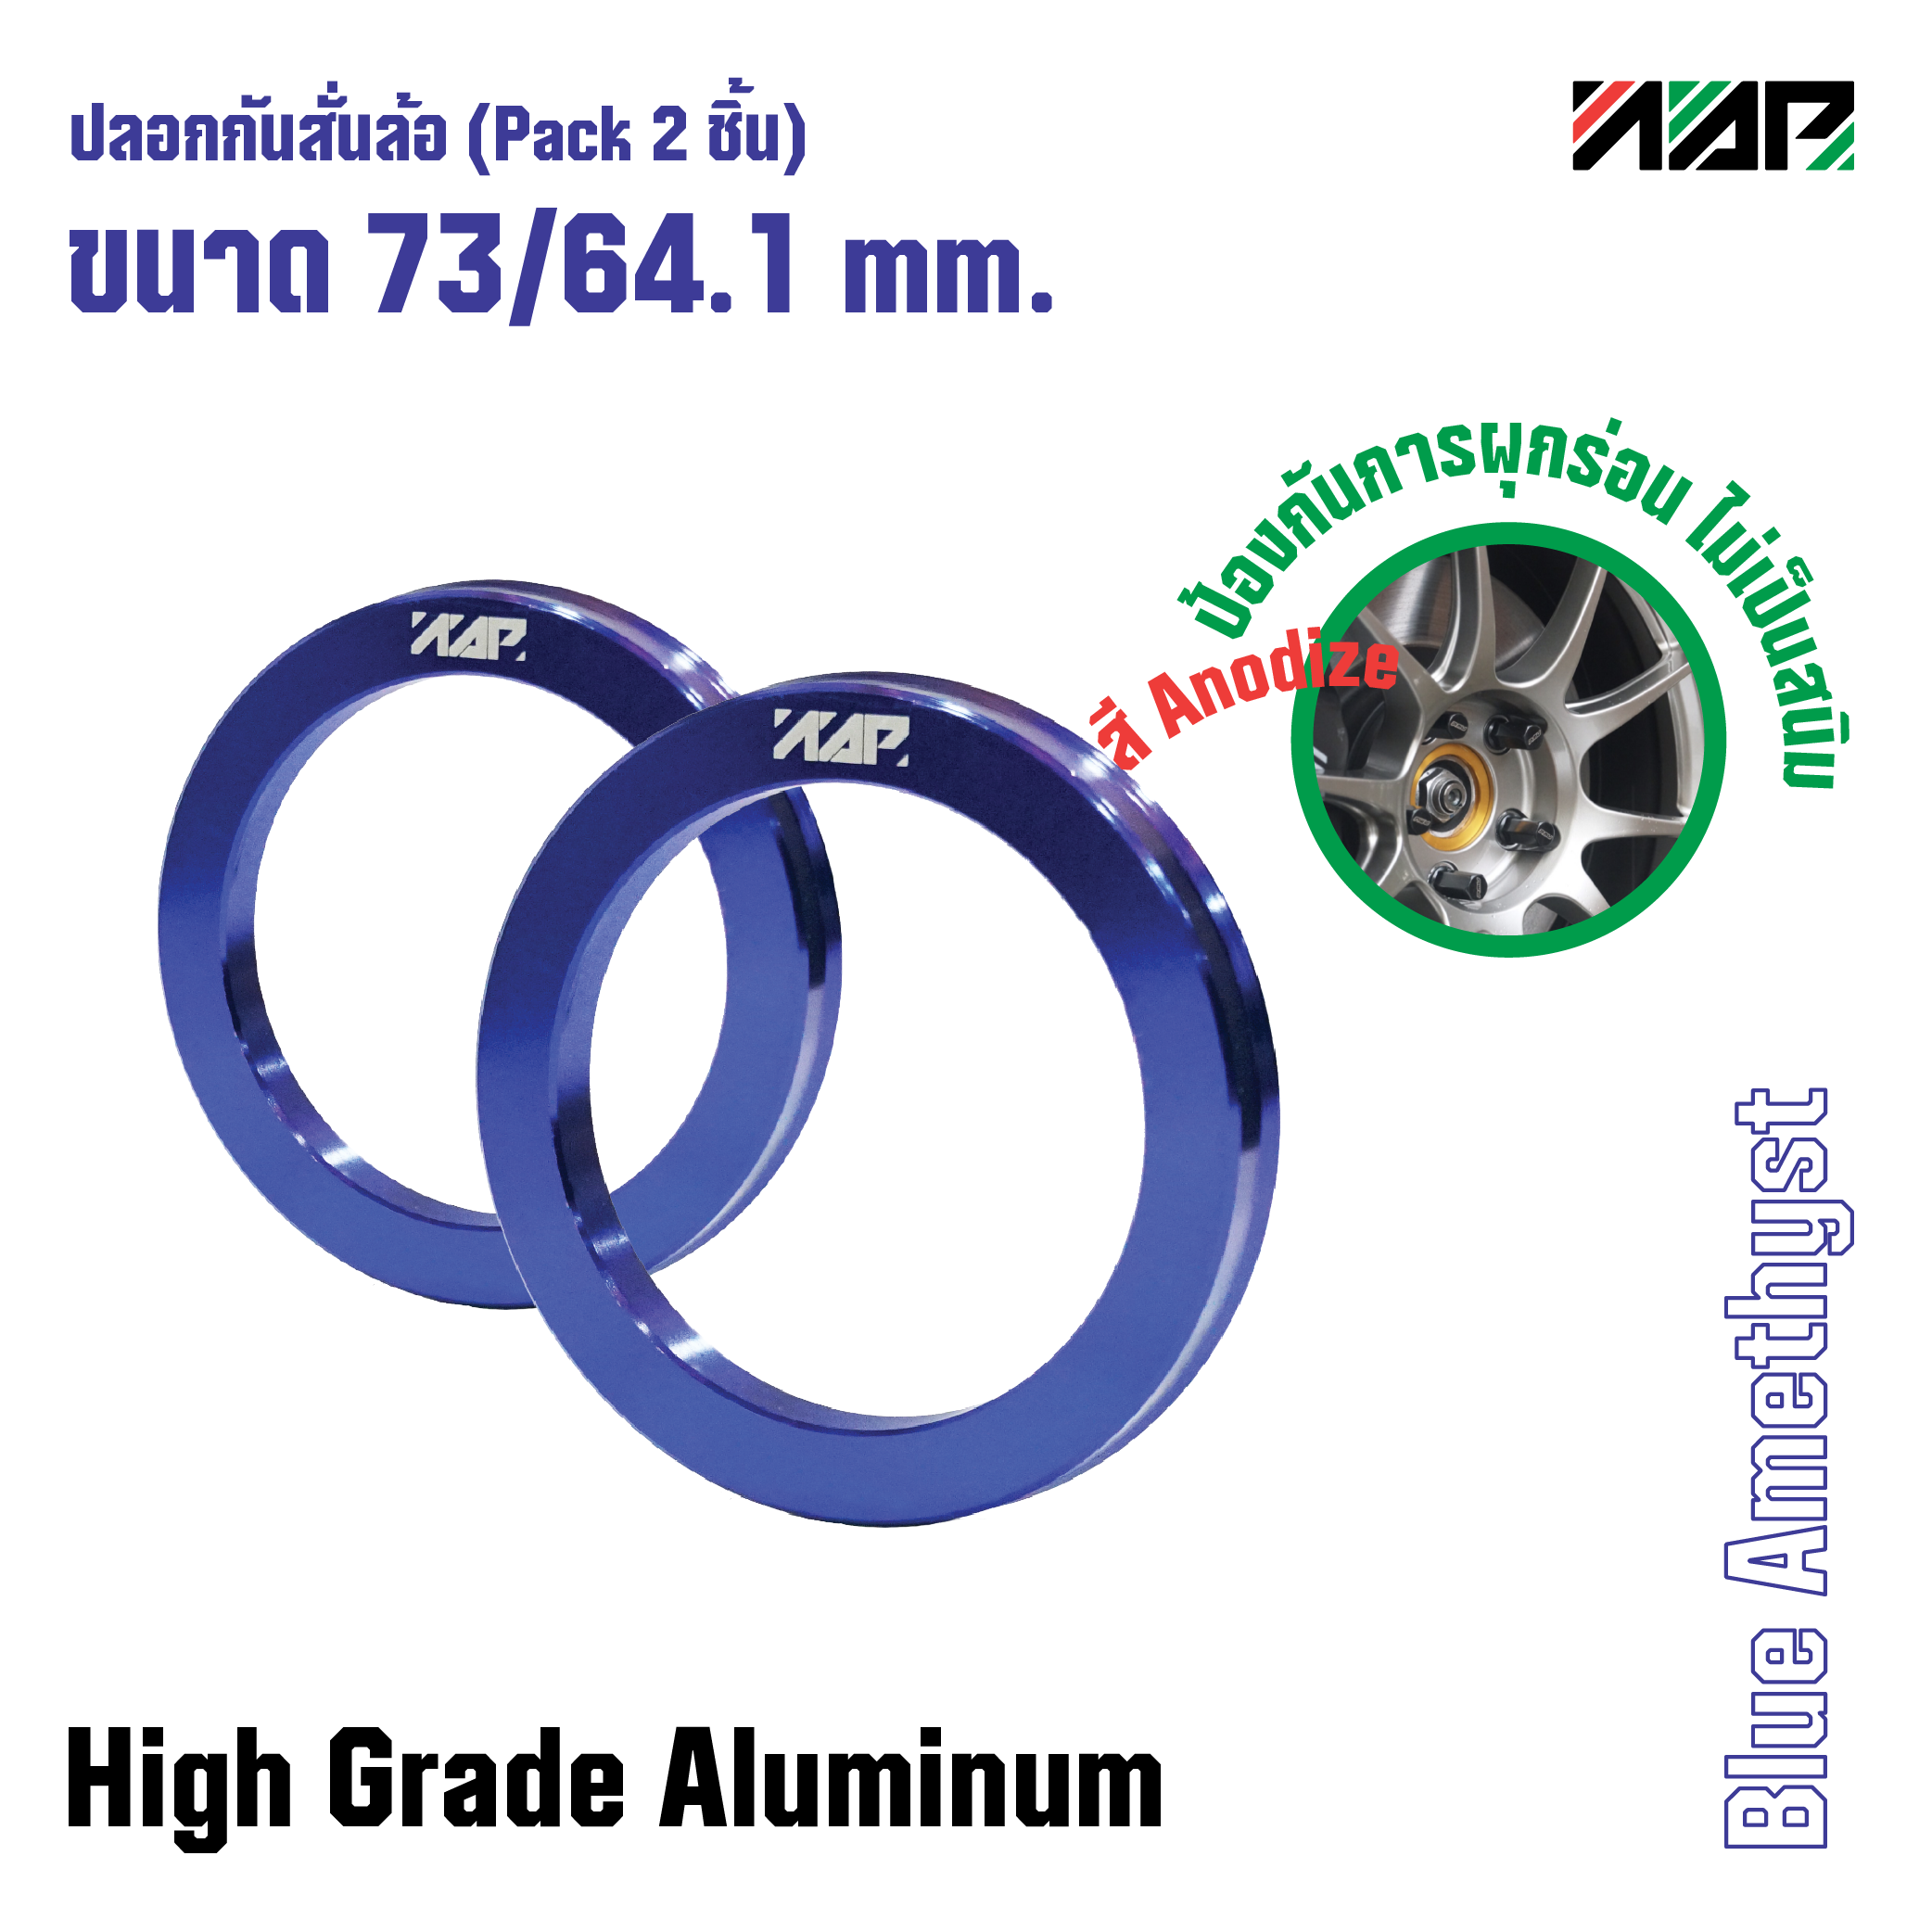 ปลอกกันสั่นล้อ Hub ring 73/64.1 mm. (Pack 2 ชิ้น) Civic FD, Odyssey, Accord, CRV สี Blue Amethyst